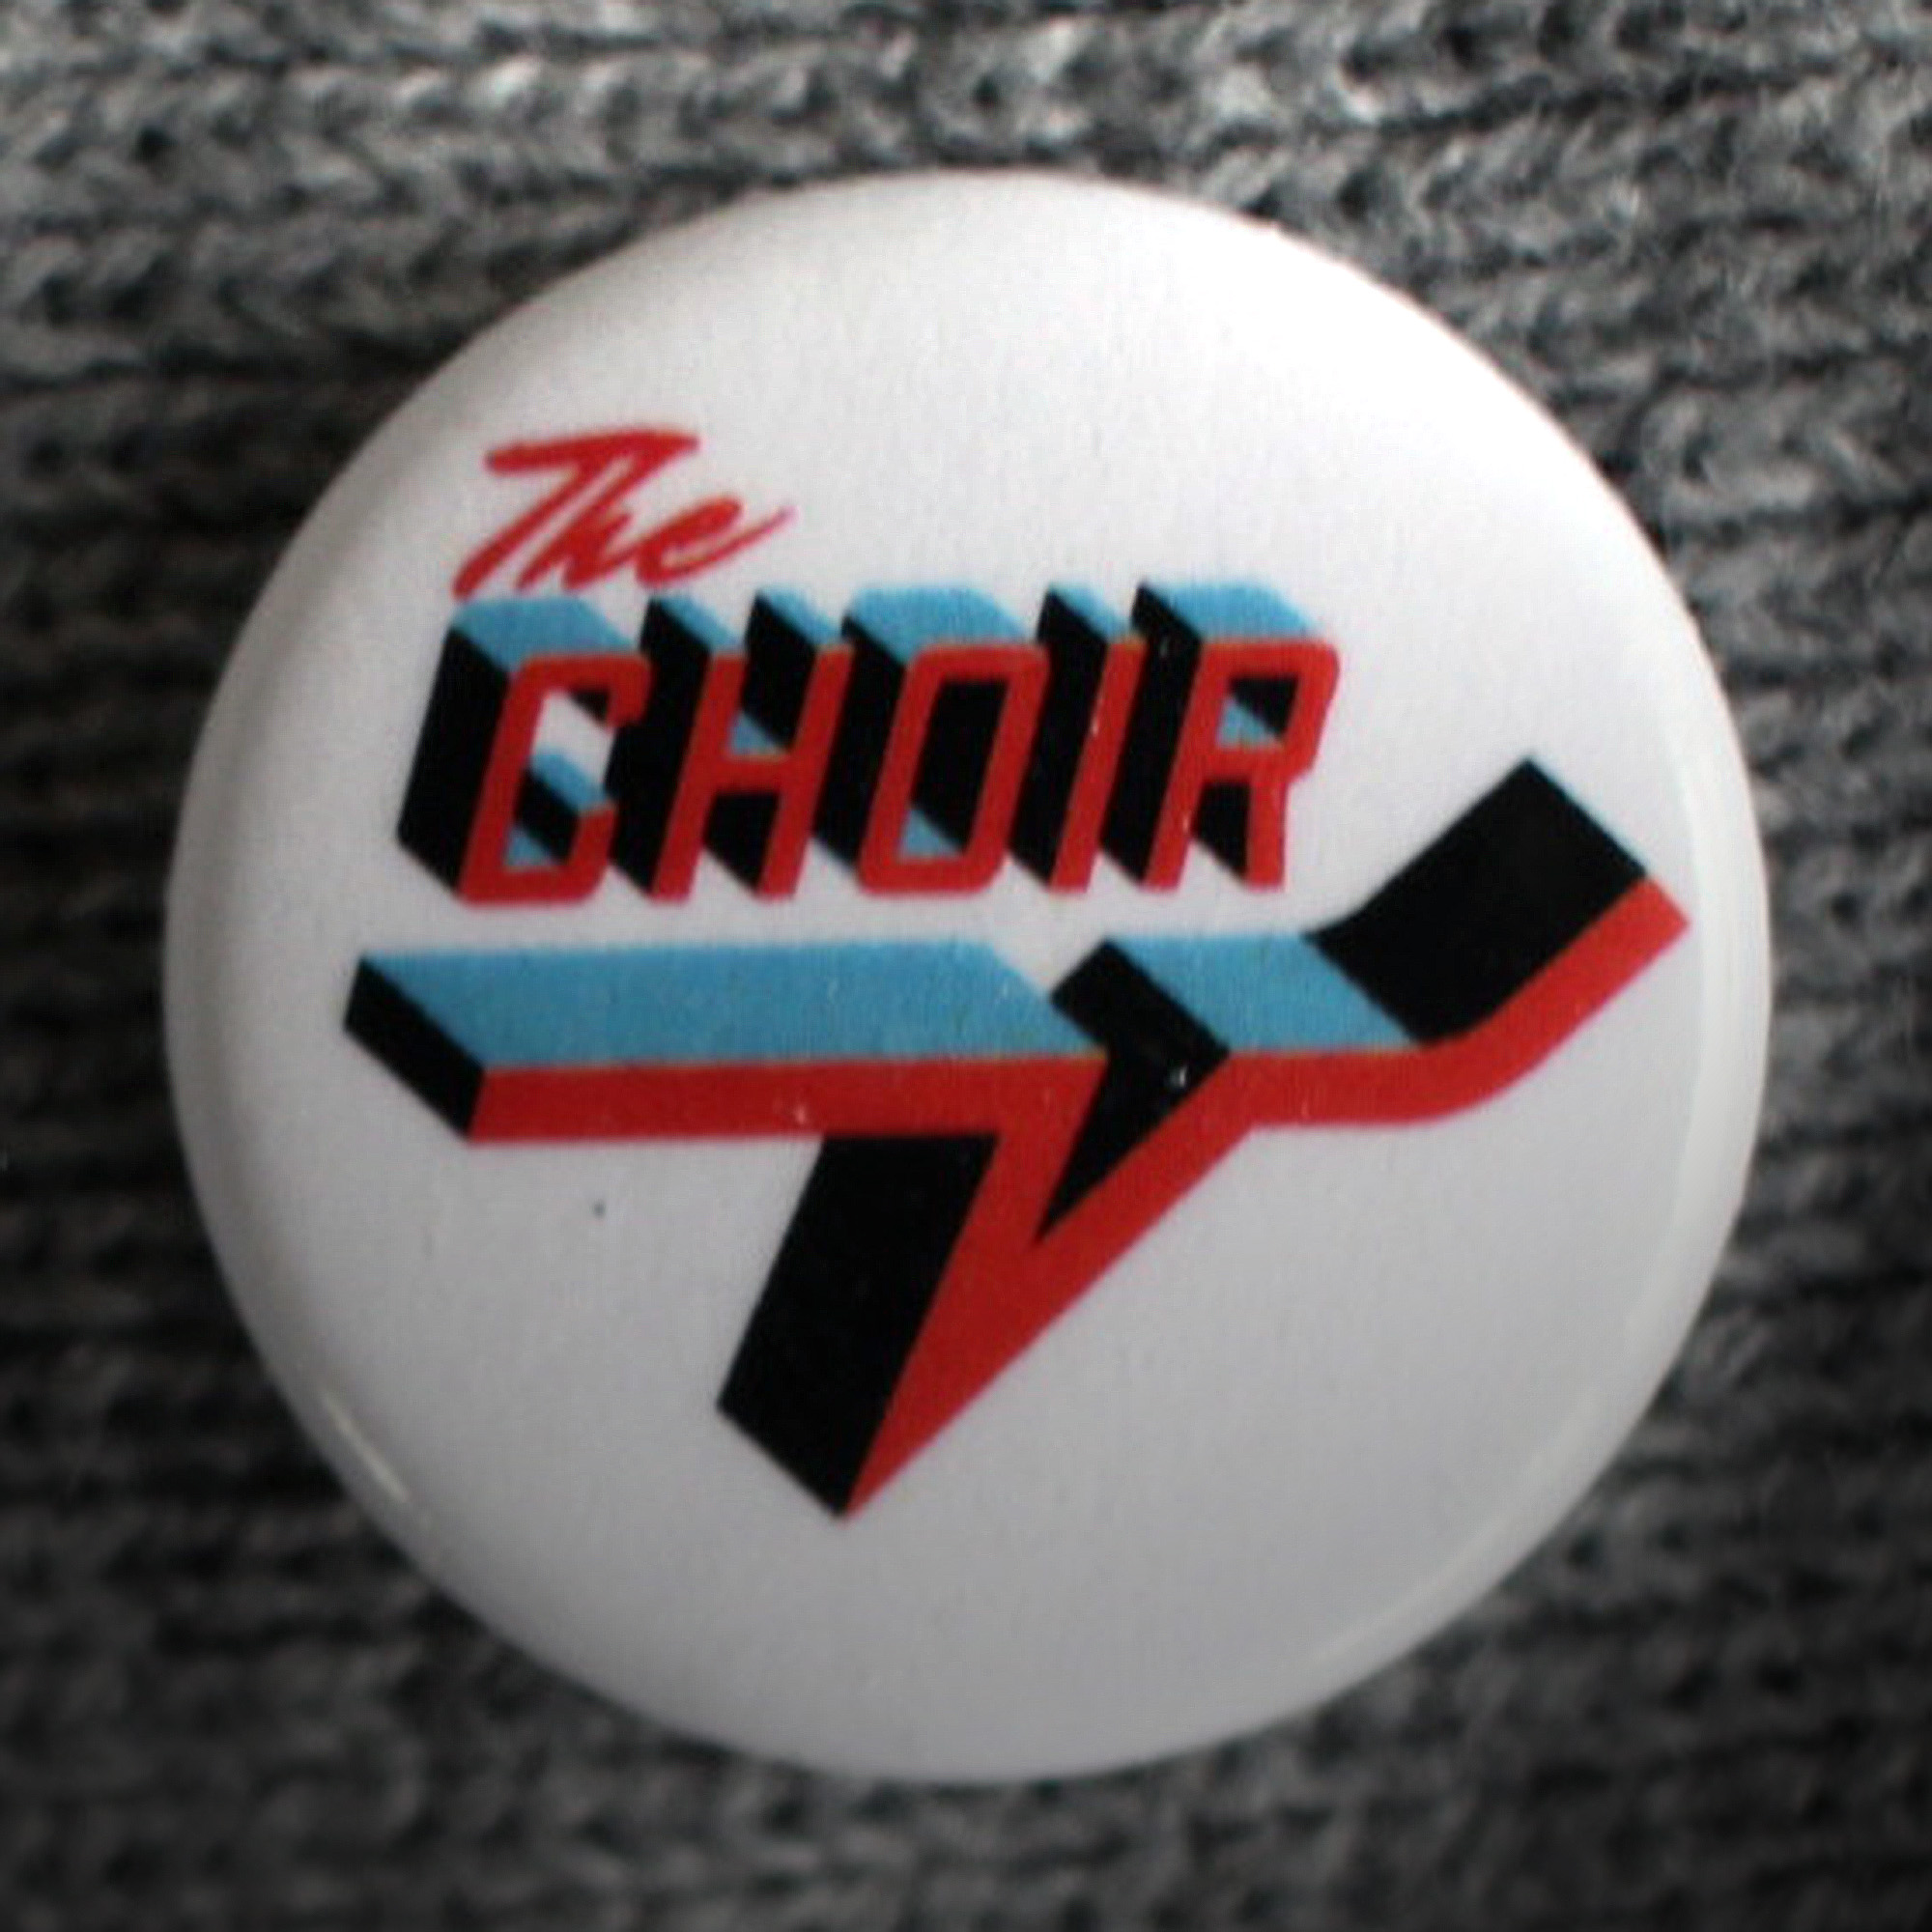 The Choir button